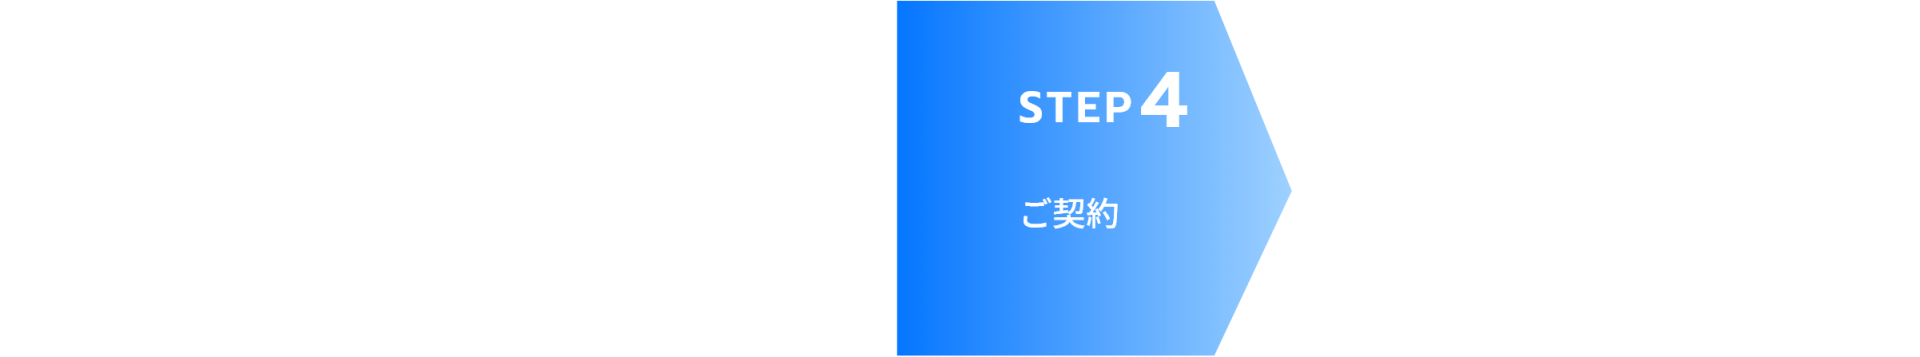 STEP4 ご契約